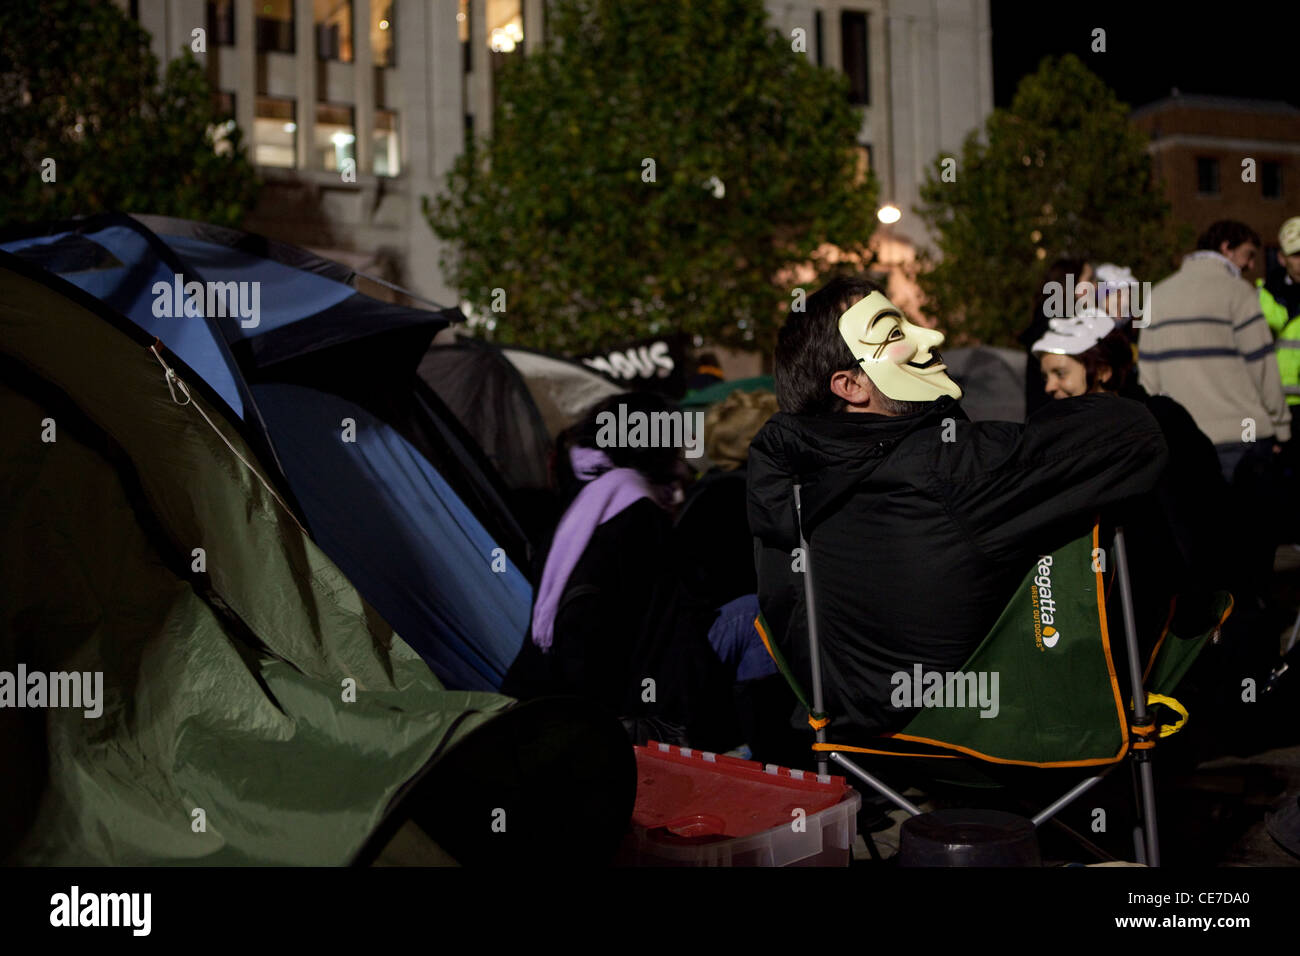 St Paul's, donde las personas están acampados para protestar contra el sistema financiero mundial. Activista en V de Vendetta máscara en su tienda. Foto de stock